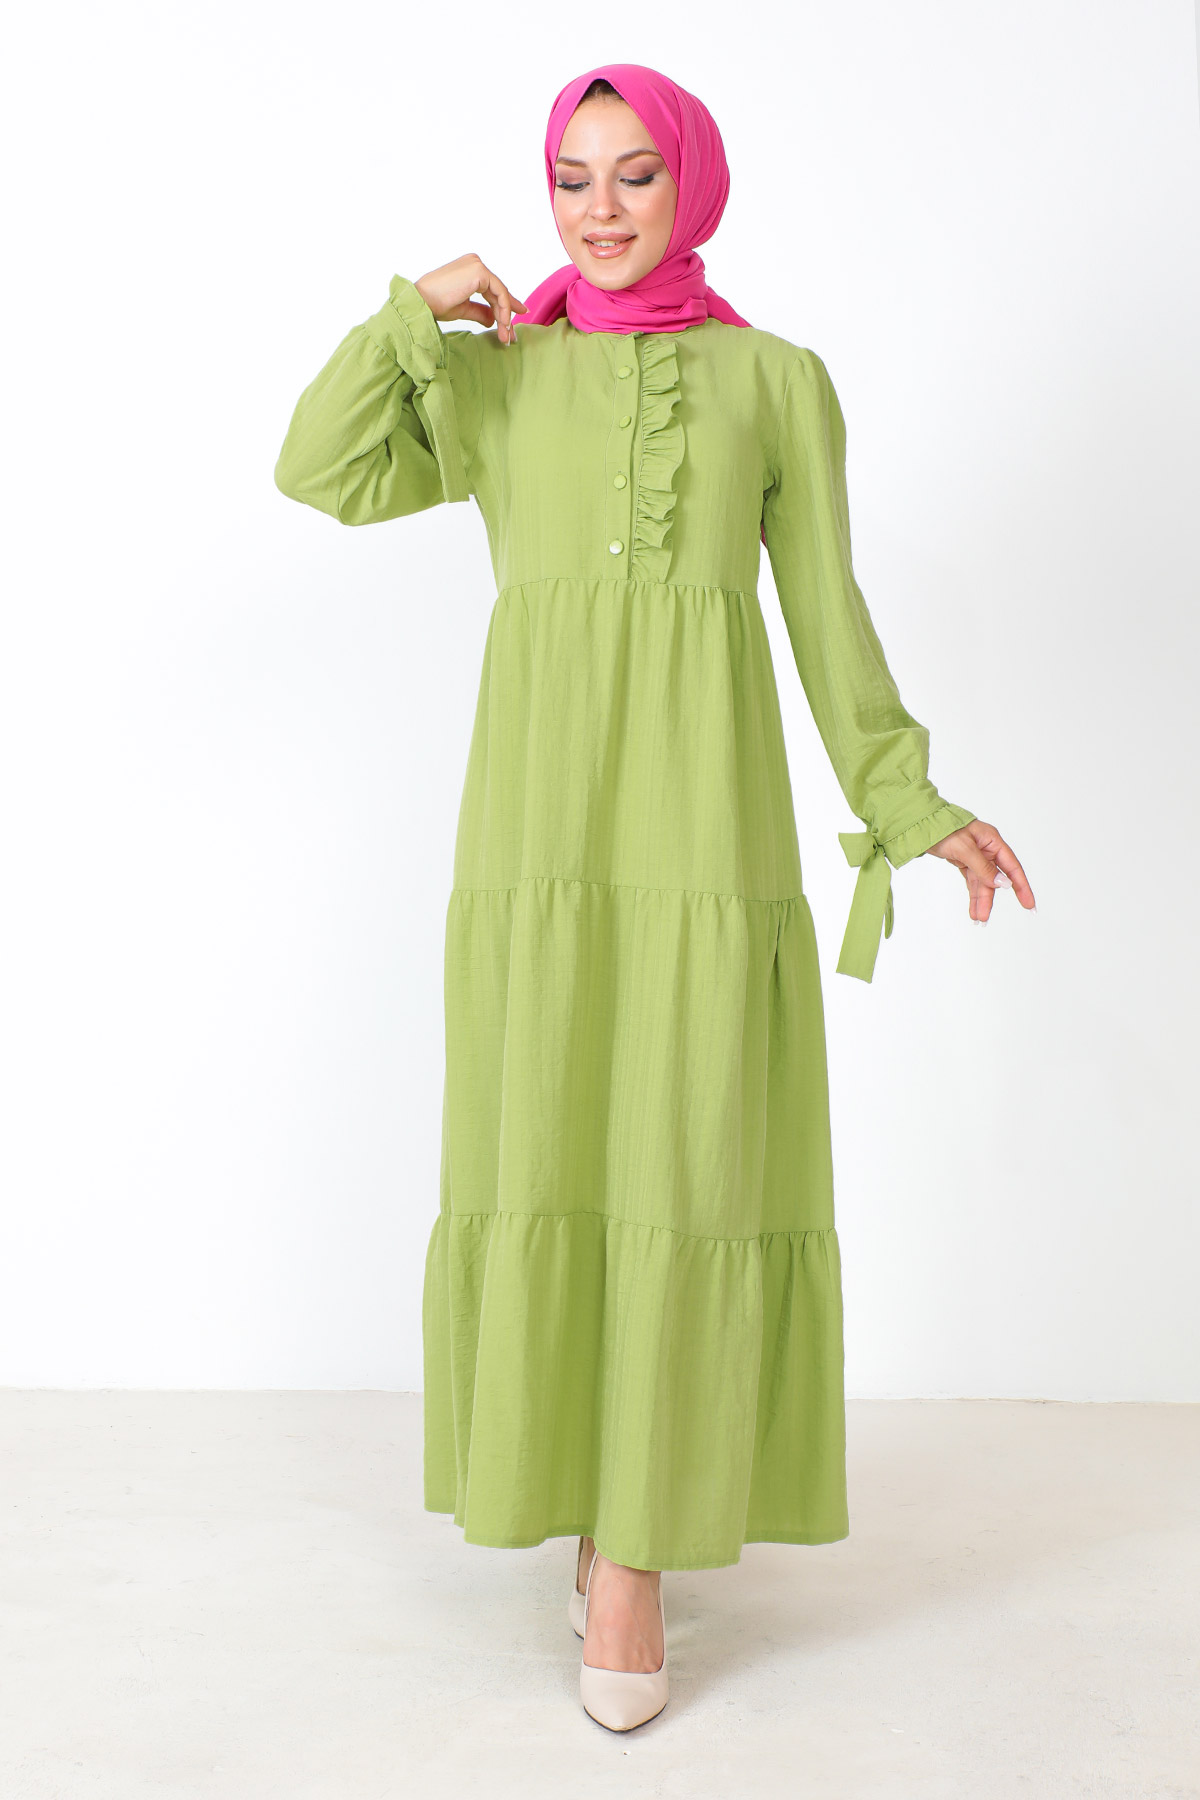 Tesettür Dünyası - Kolu Bağlamalı Tesettür Elbise TSD221207 Fıstık Yeşili